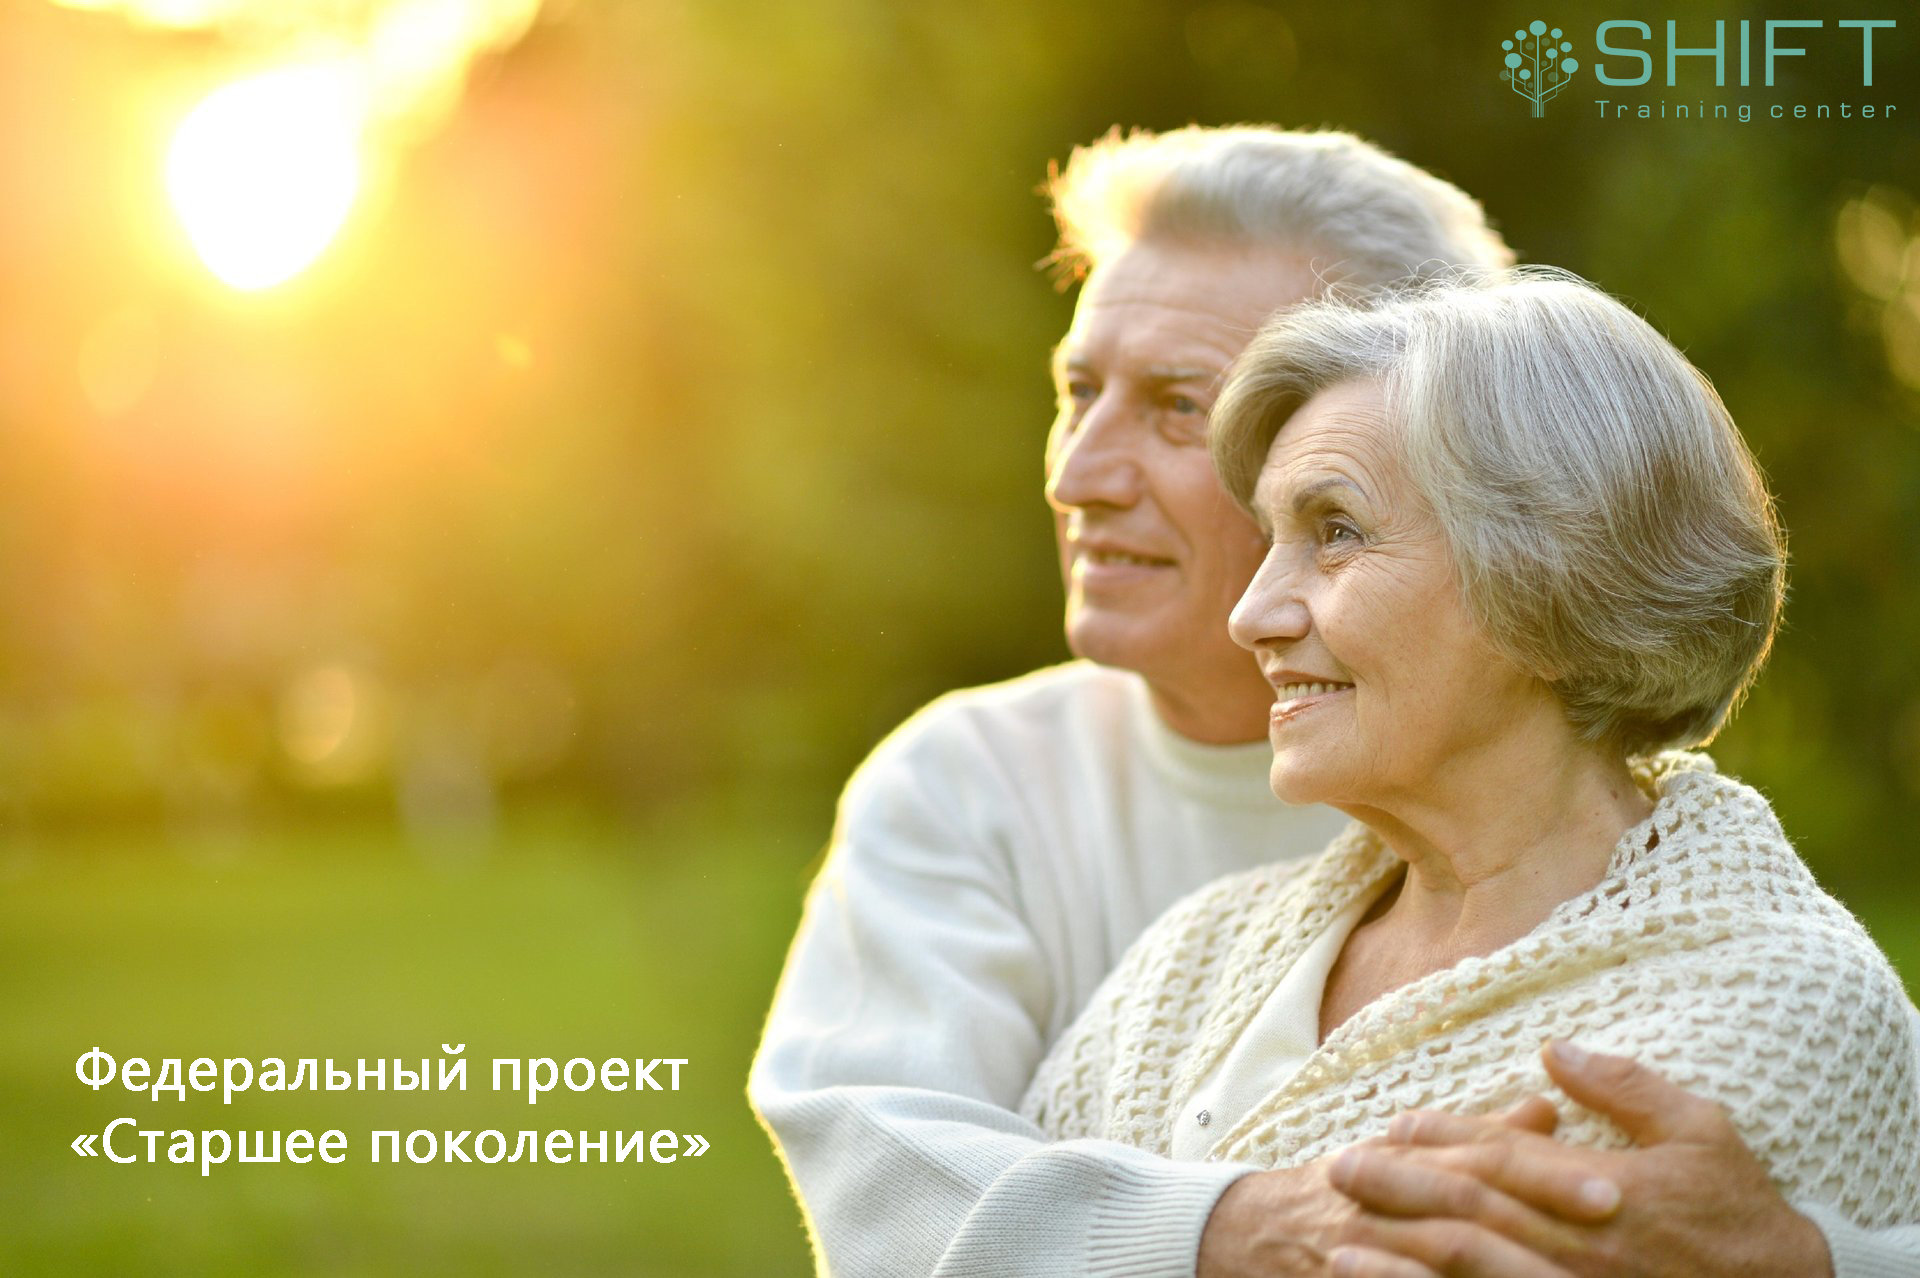 Пожилыми считаются люди в возрасте. Пожилые люди. Красивые пожилые люди. Люди пожилого возраста. Пенсионеры.